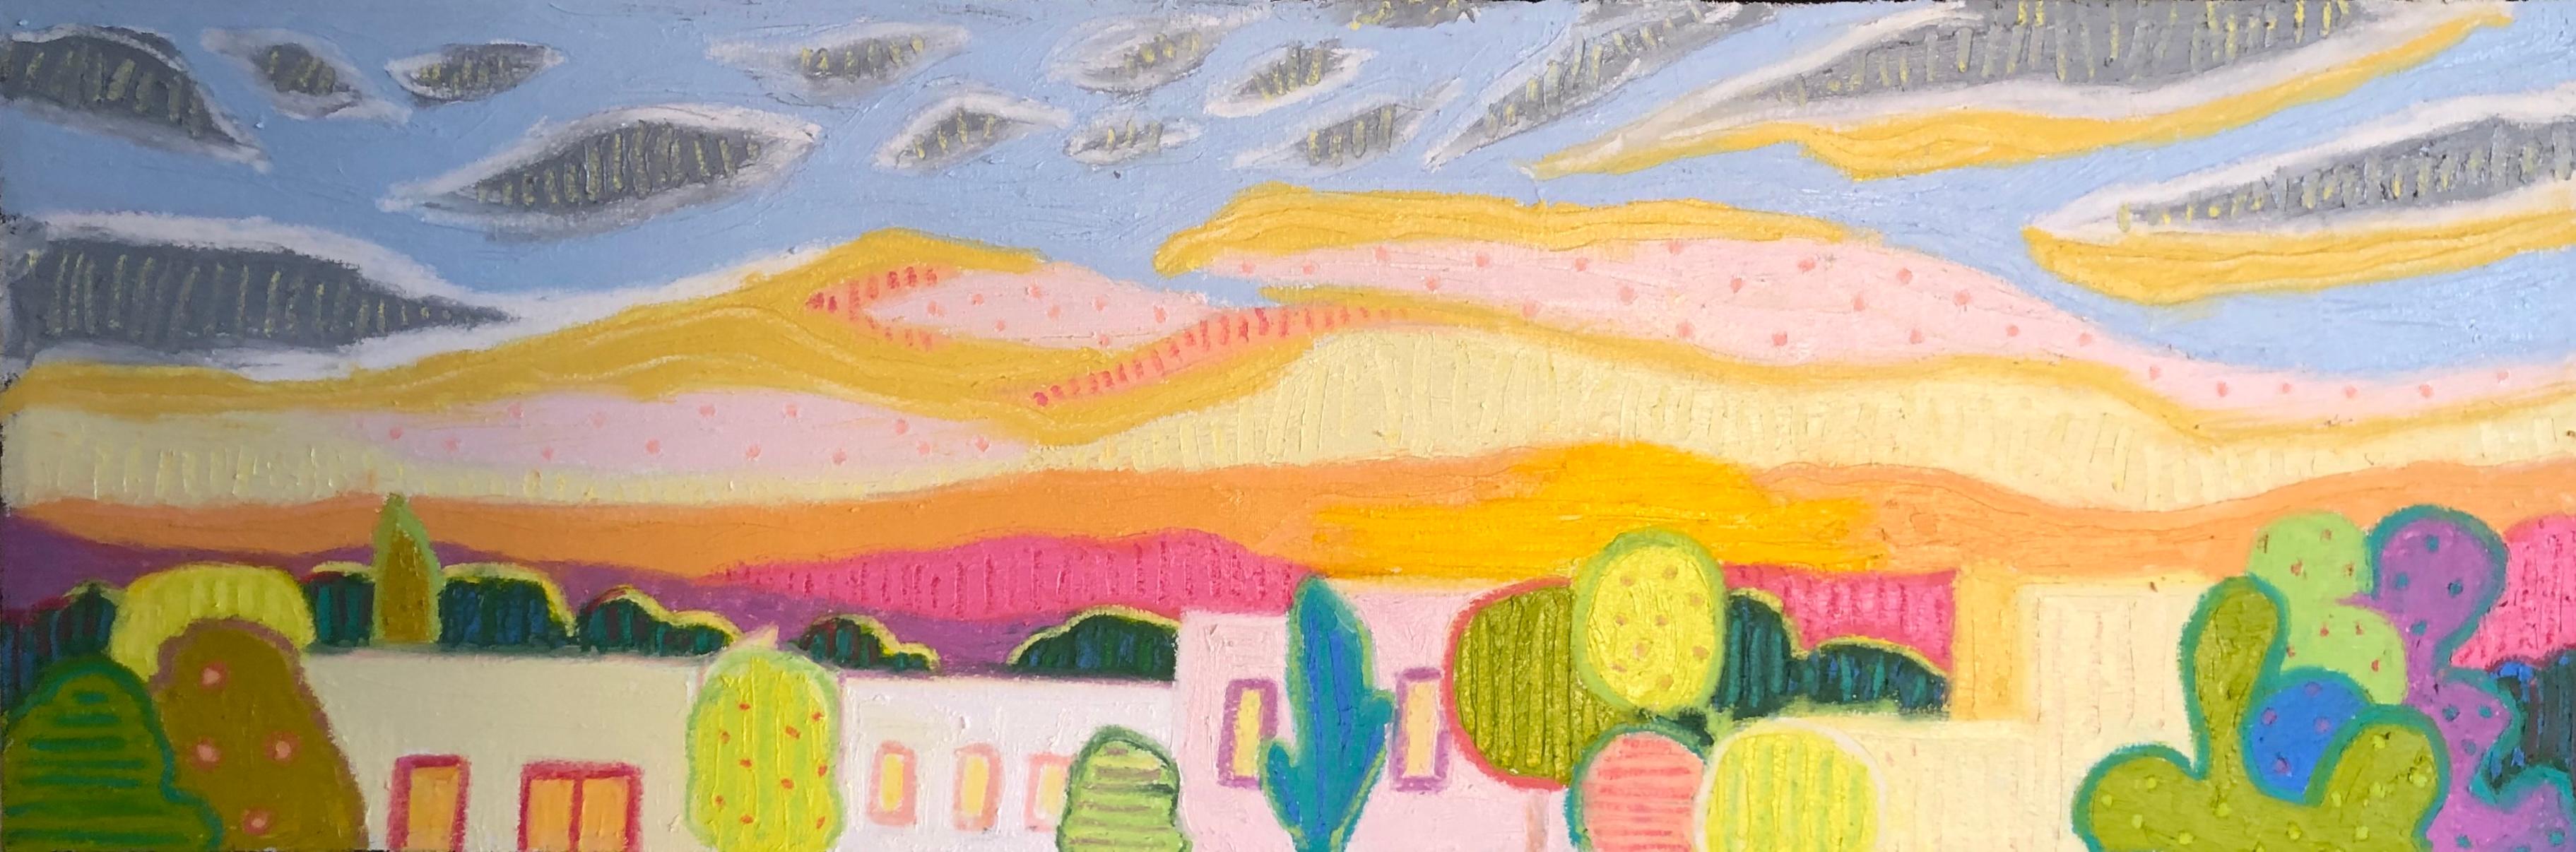 Landscape Painting Jeff Ferst - As the Sun Sets - Peinture colorée de paysage mexicain